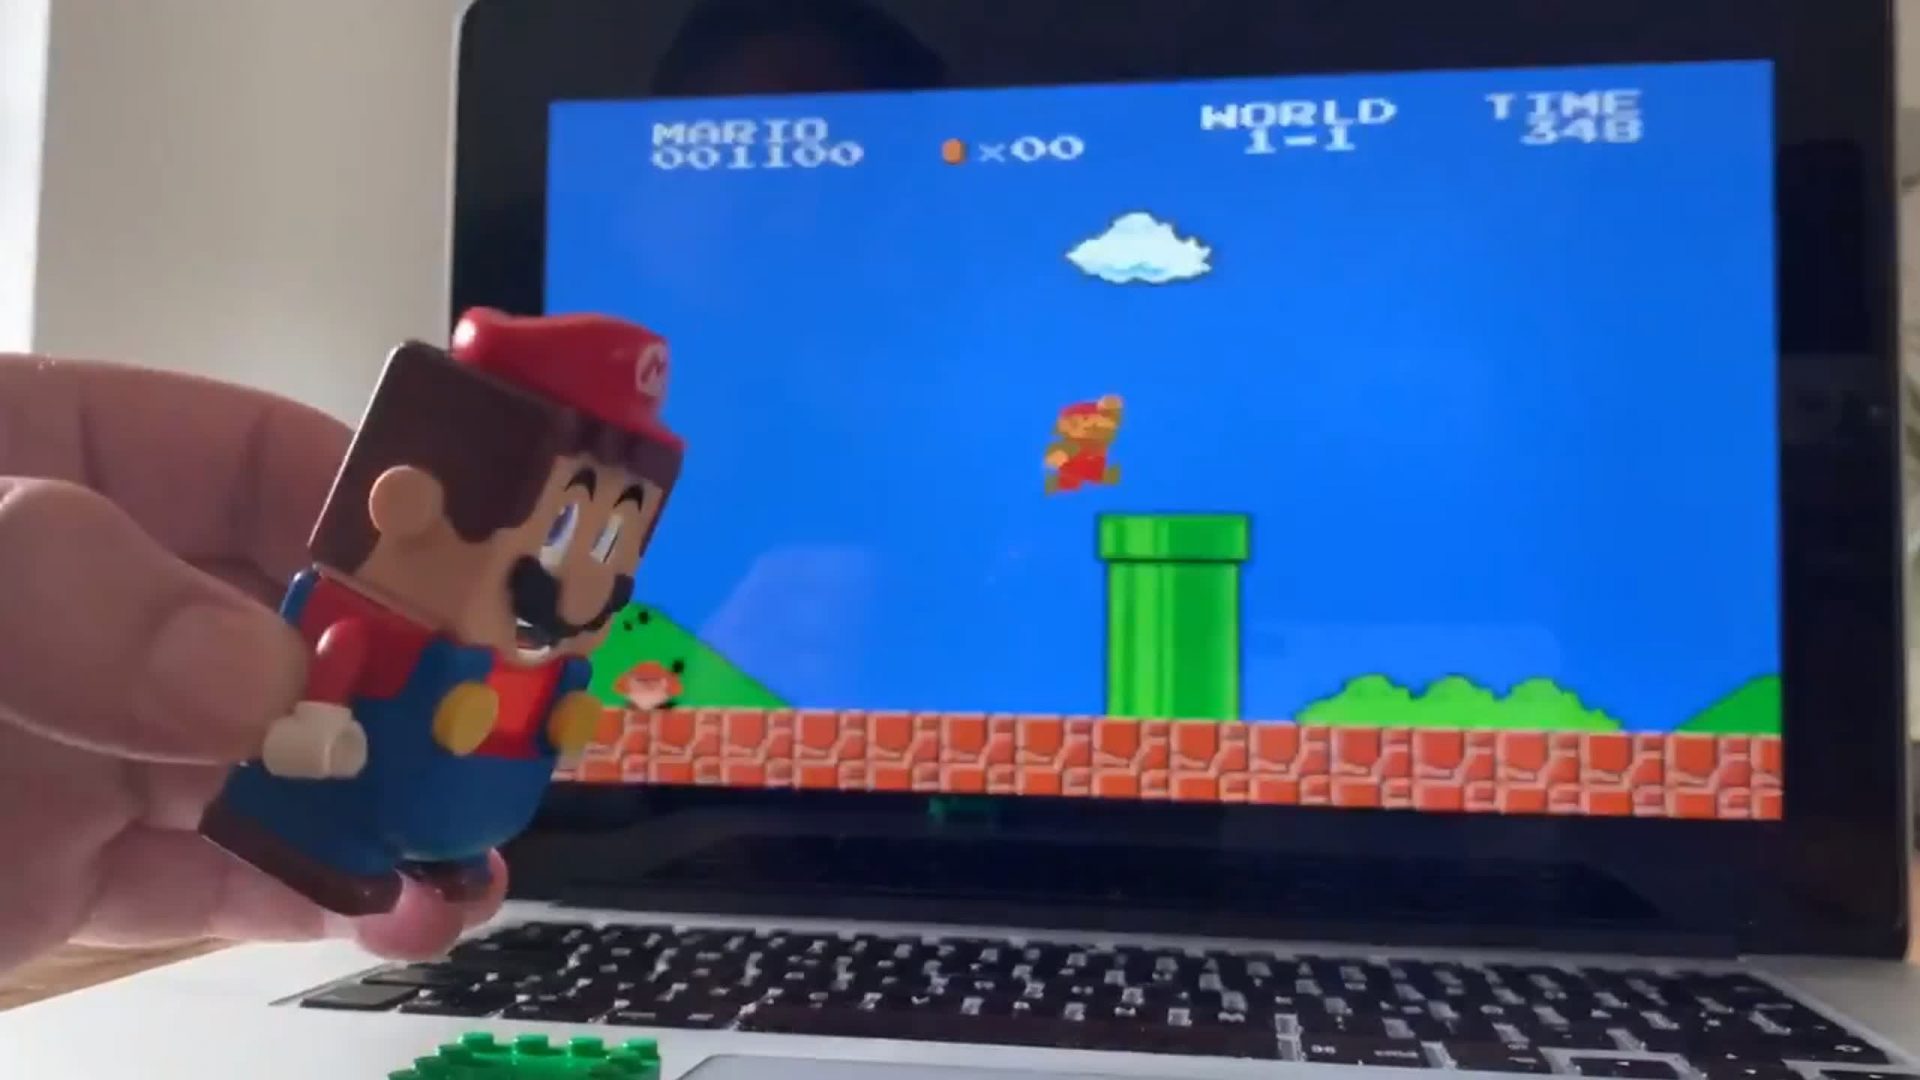 See Lego Mario controlling digital Mario